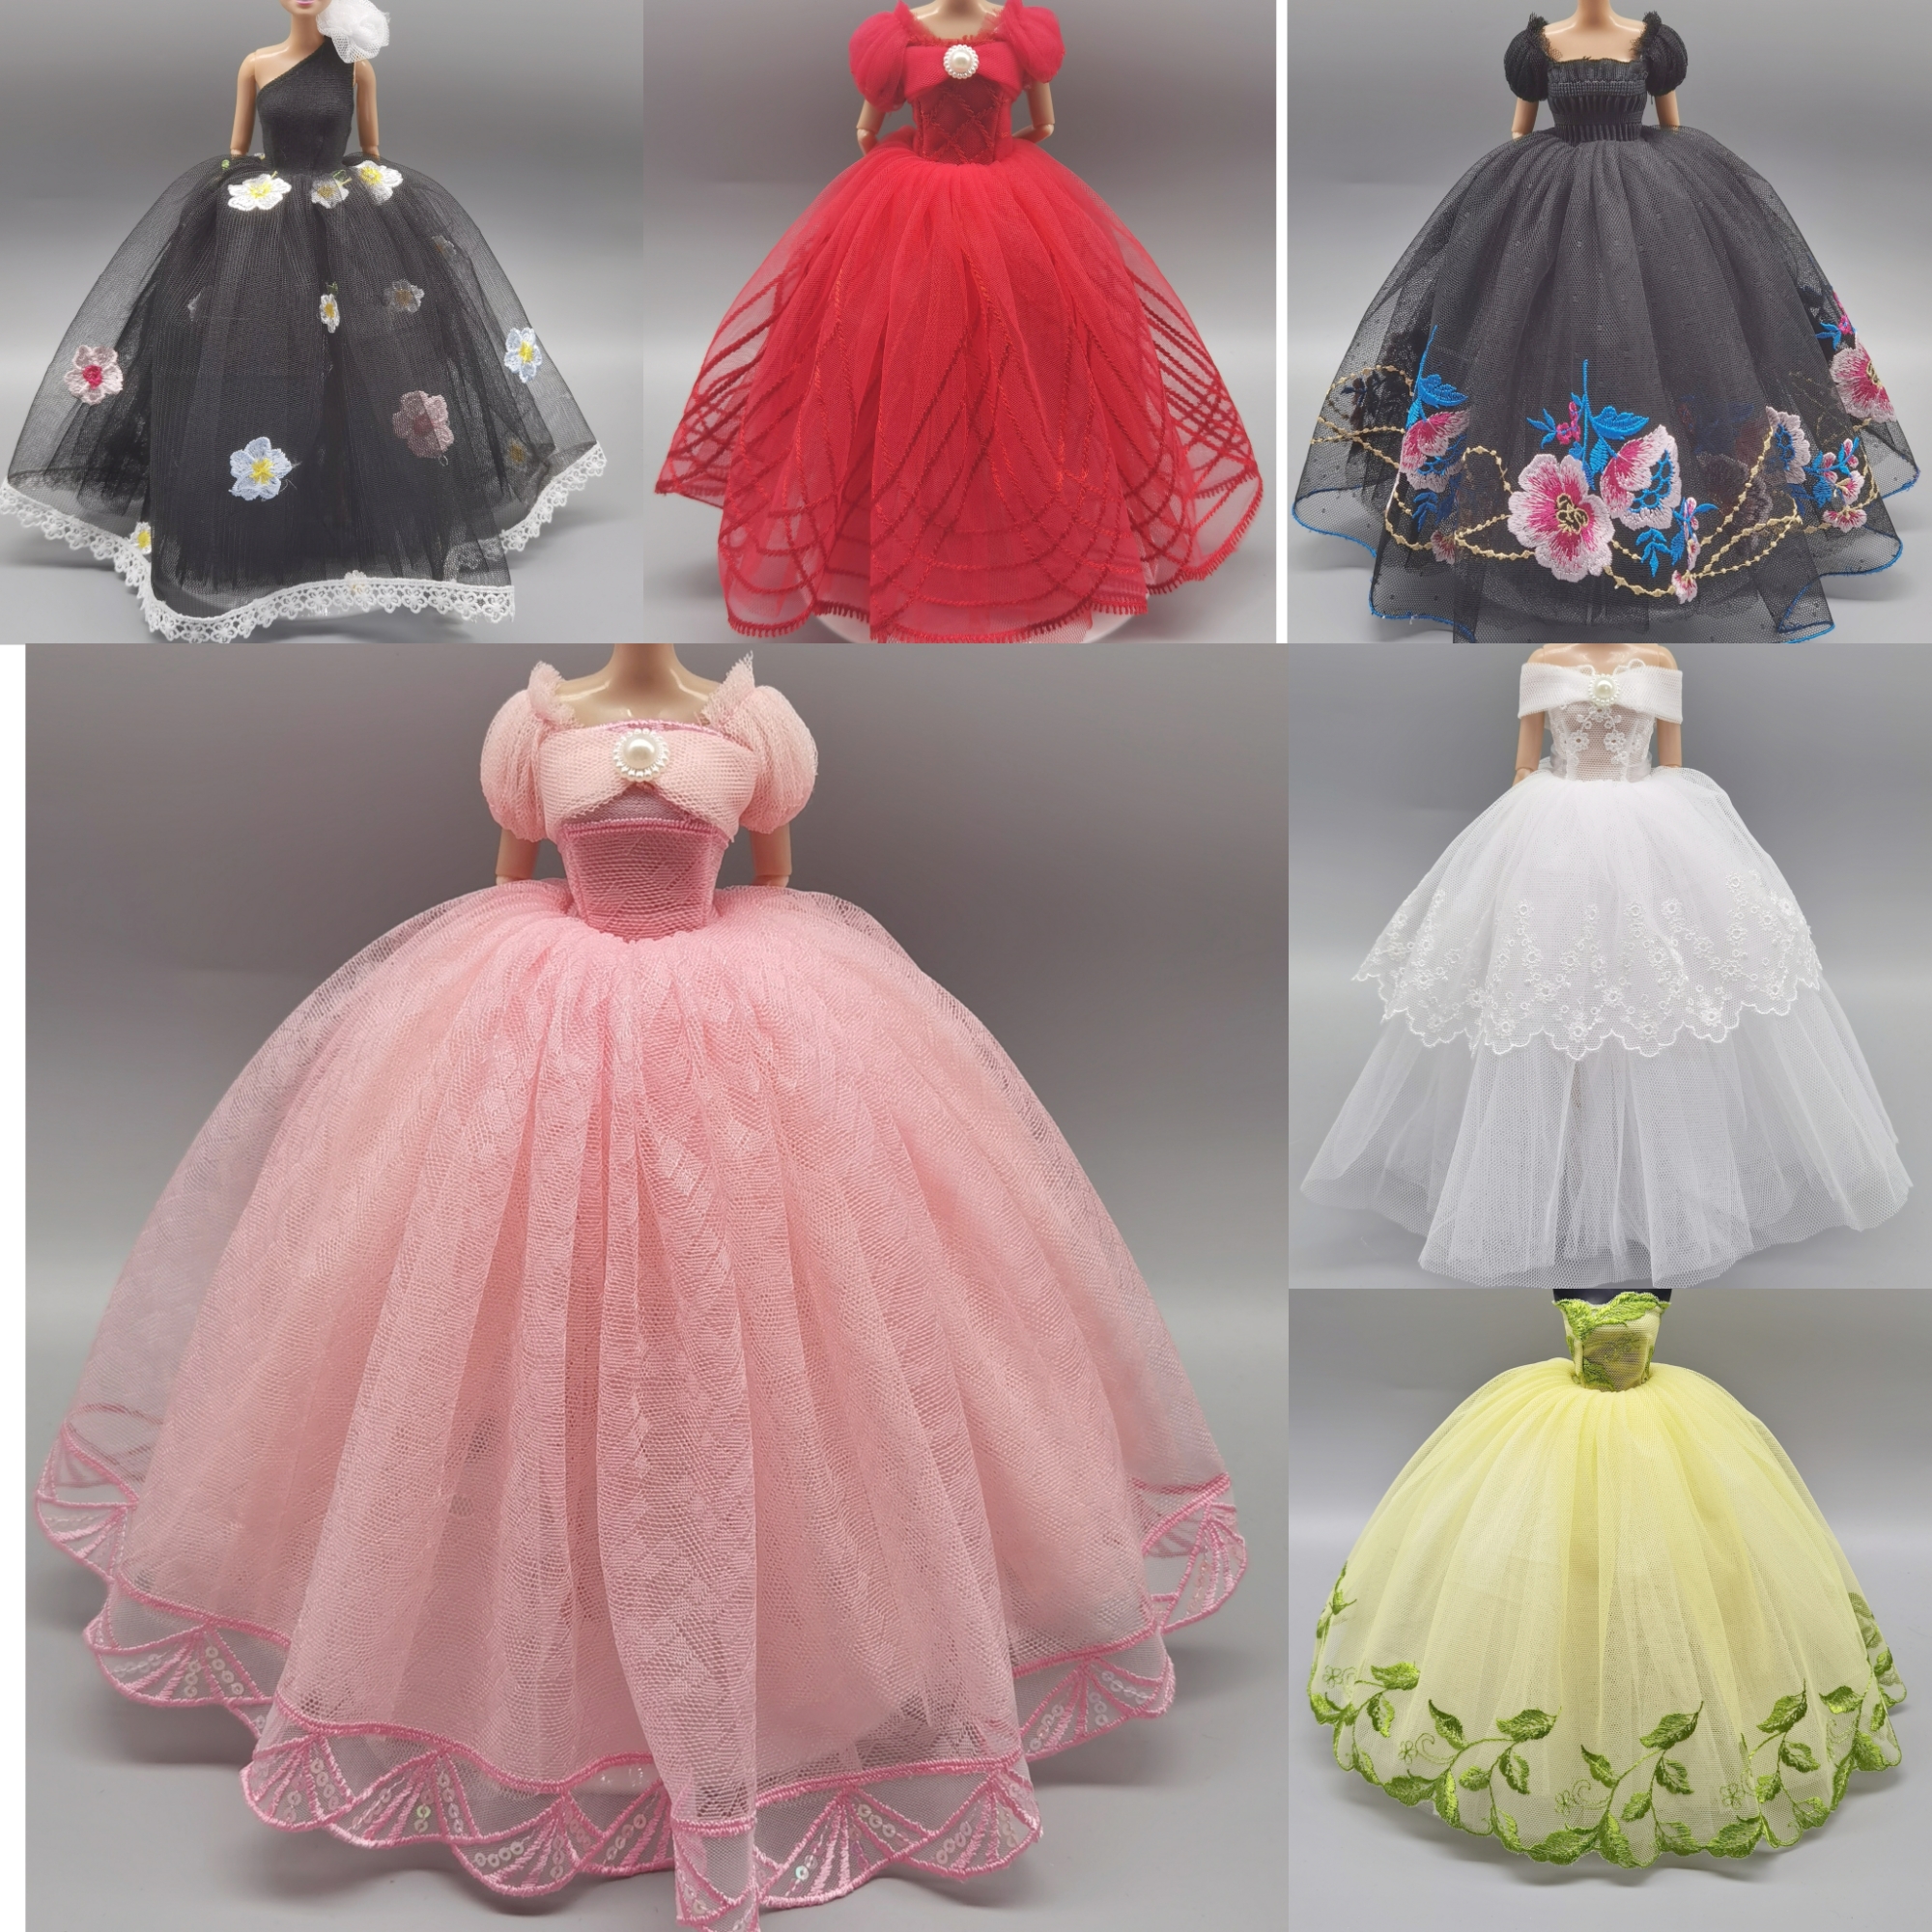 30厘米娃娃衣服娃衣配件儿童女童女孩玩具换装婚纱礼服